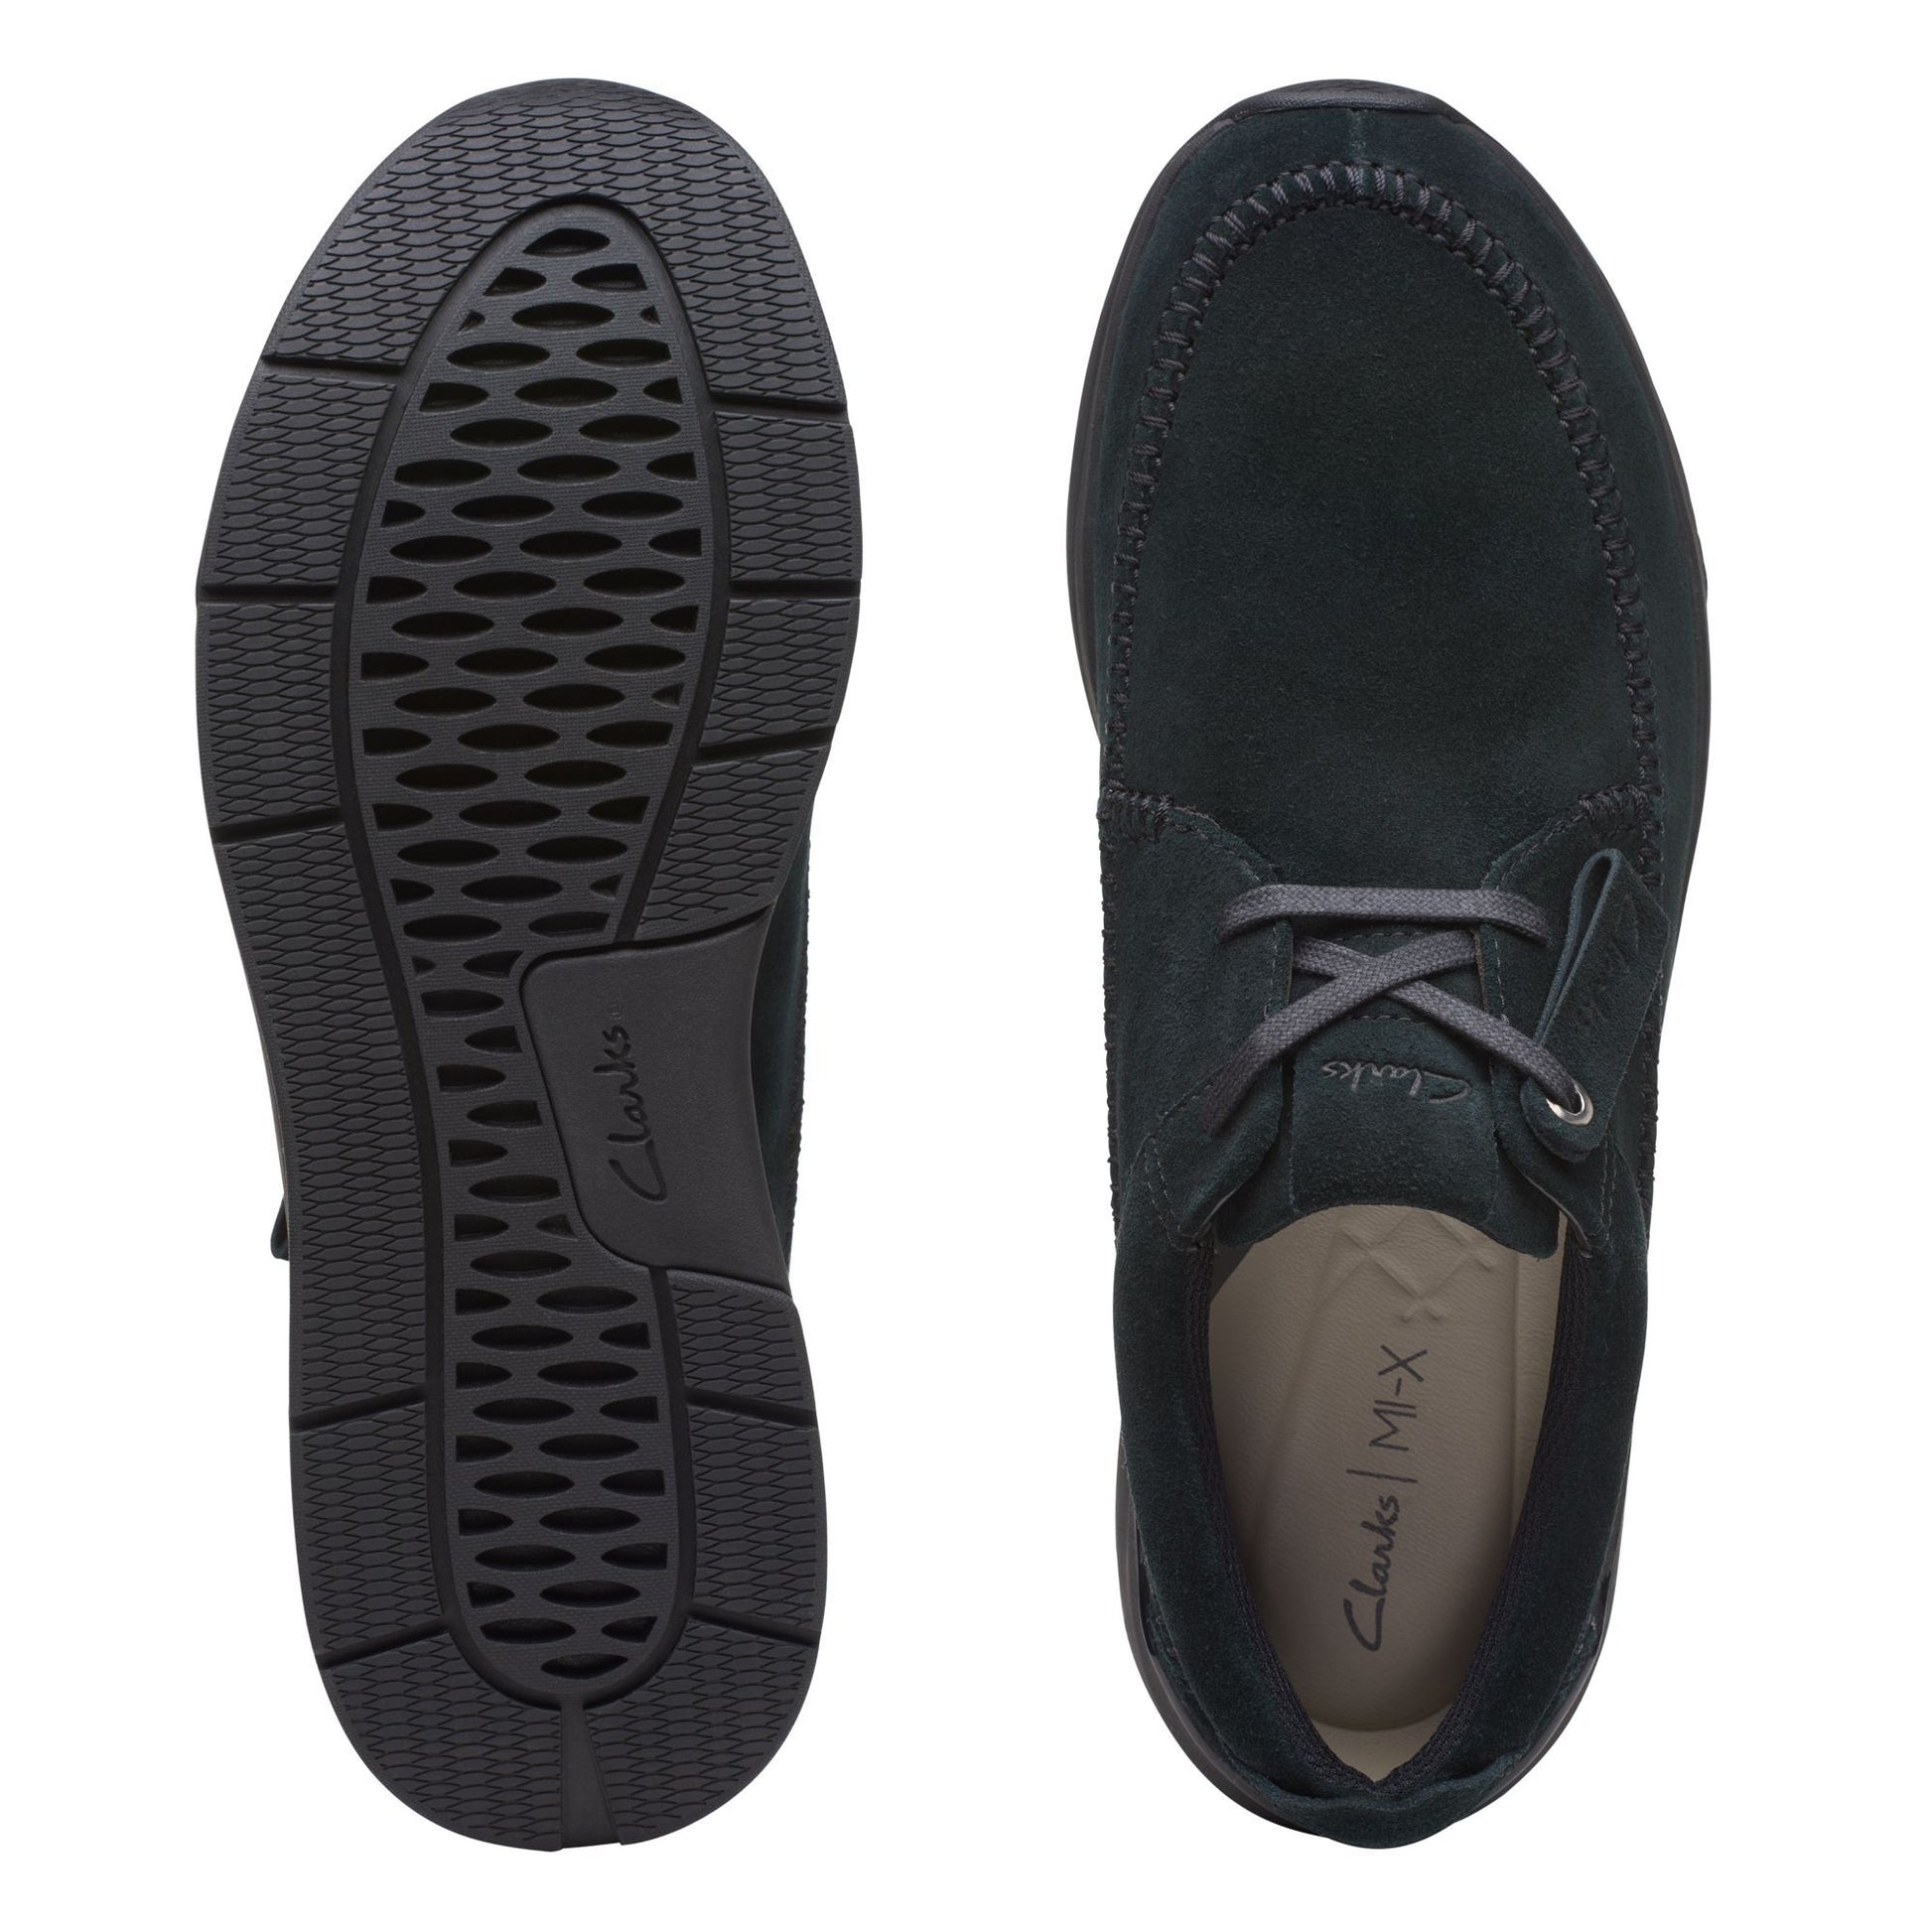 Zapatos Derby De La Marca Clarks Para Hombre Modelo Coastlite Weave Black Suede En Color Negro